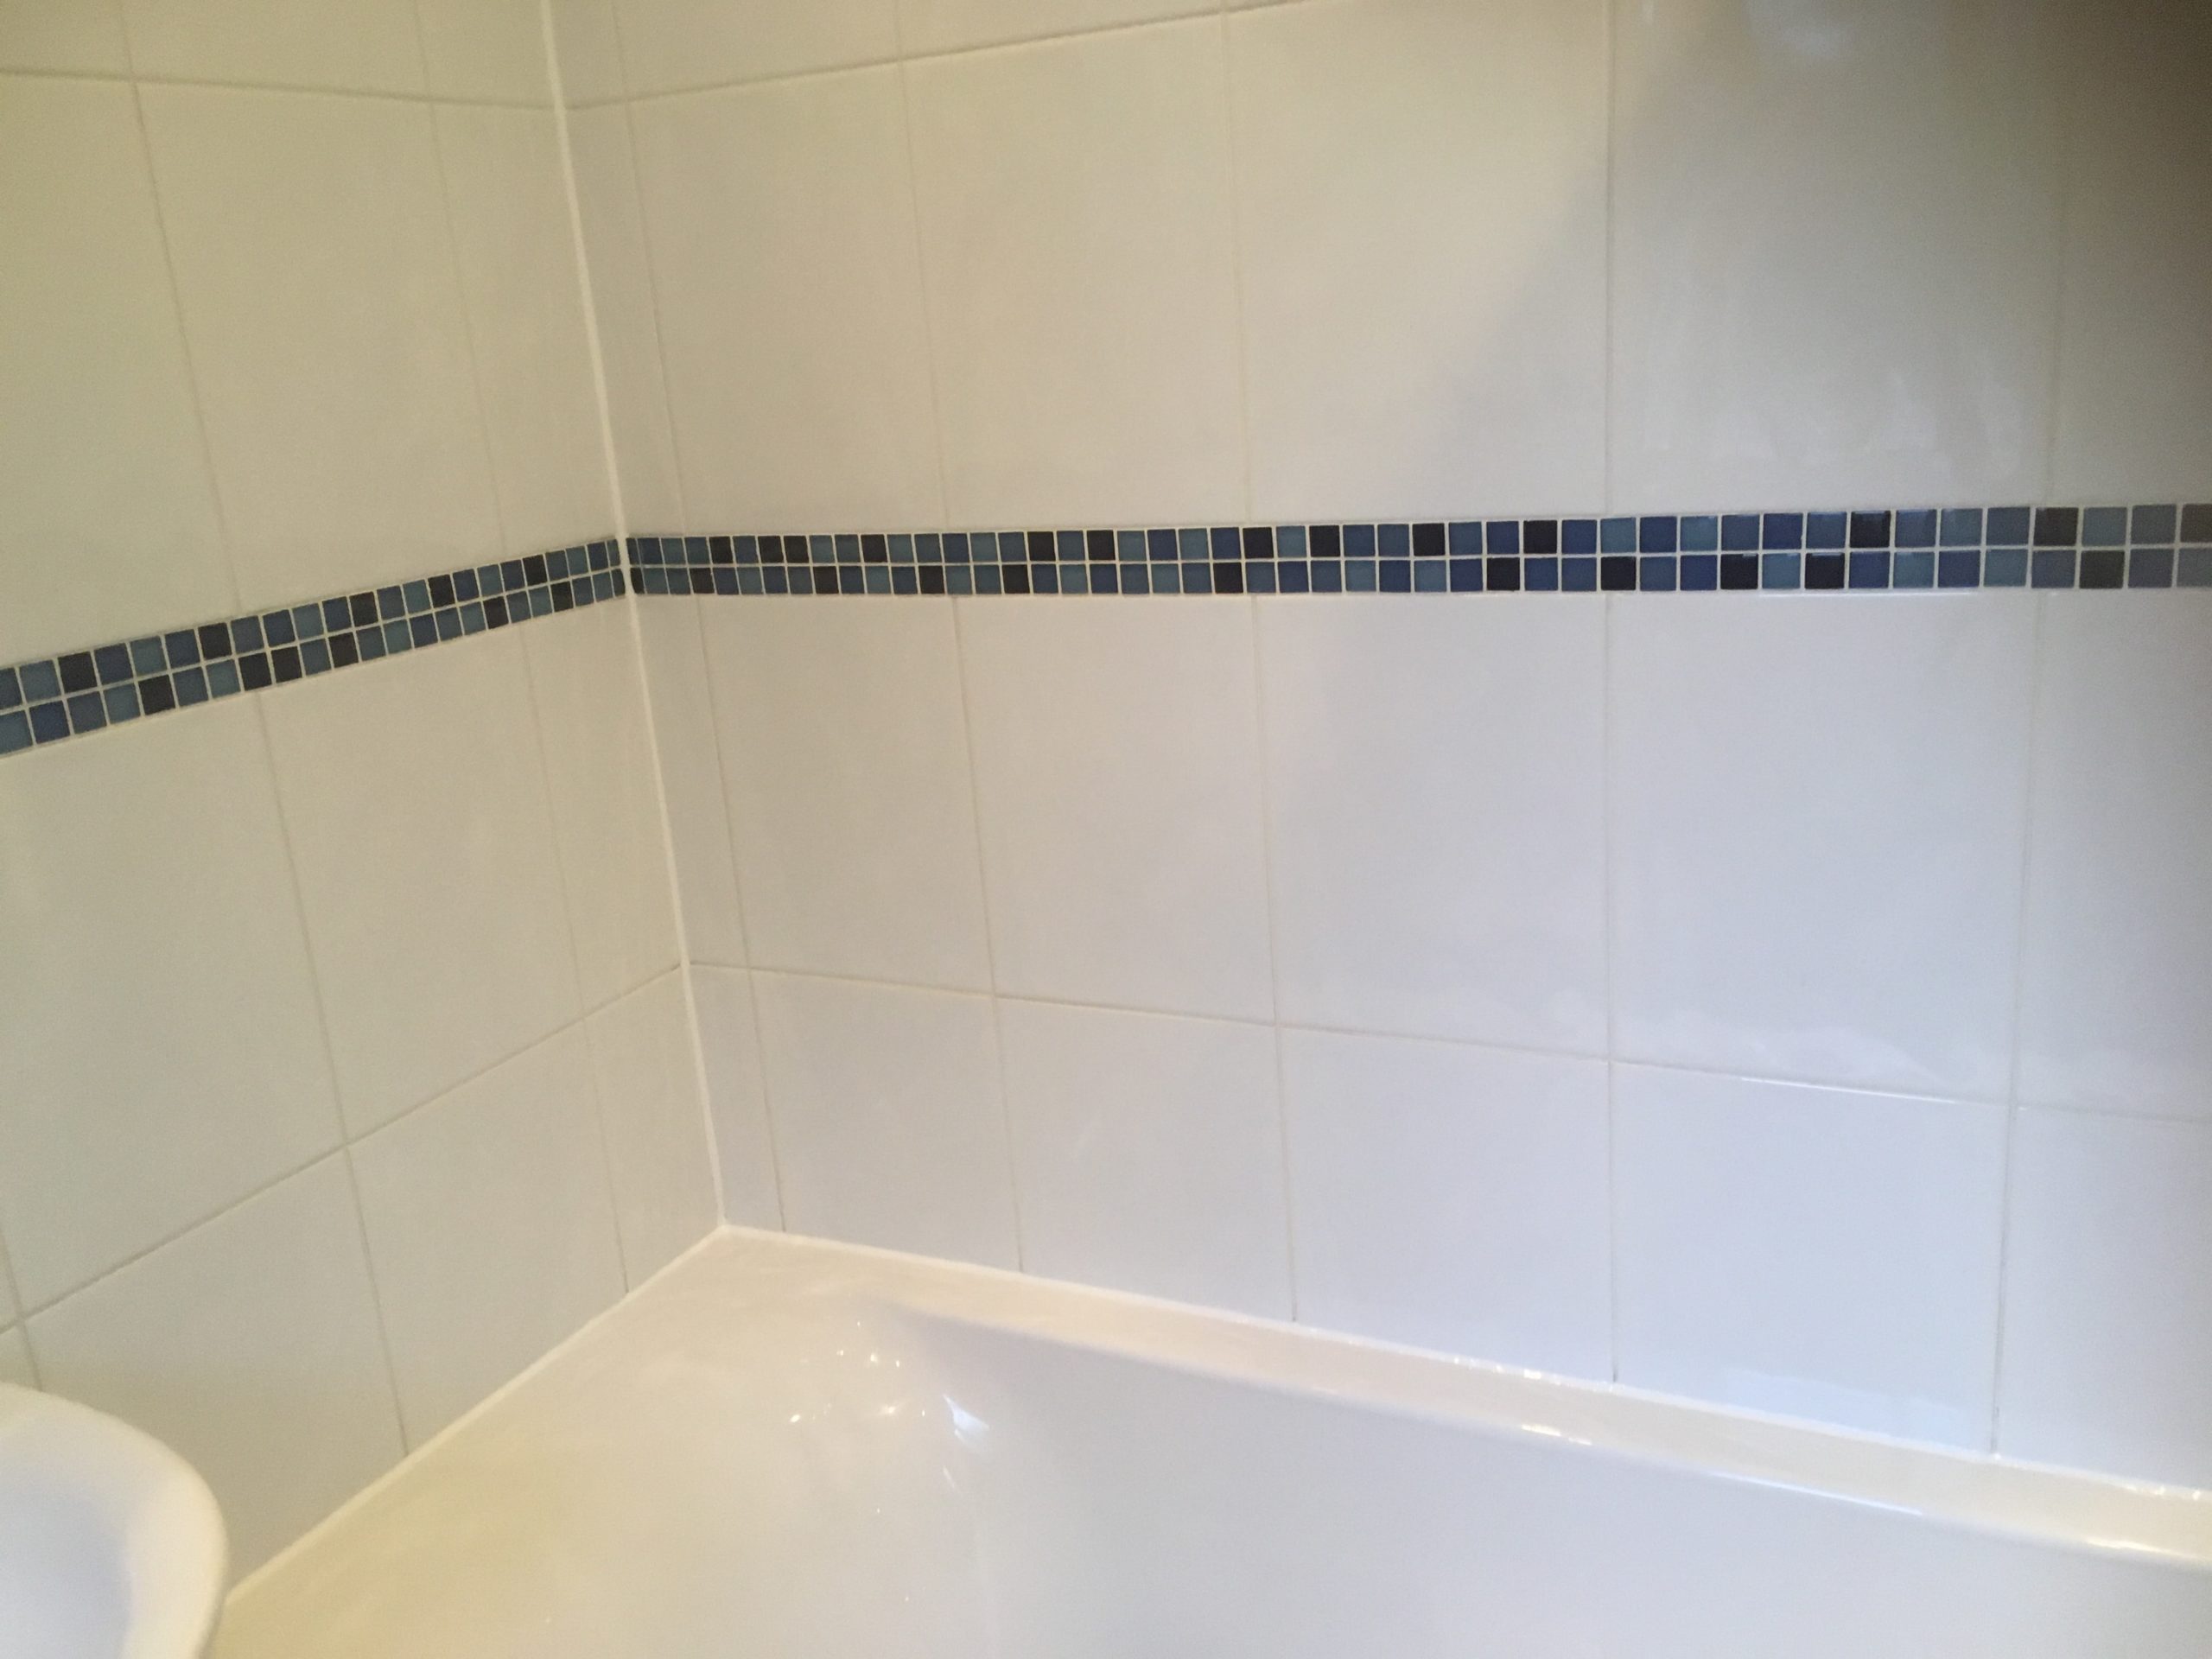 Bathroom Shower Tile After Cleaning Handforth